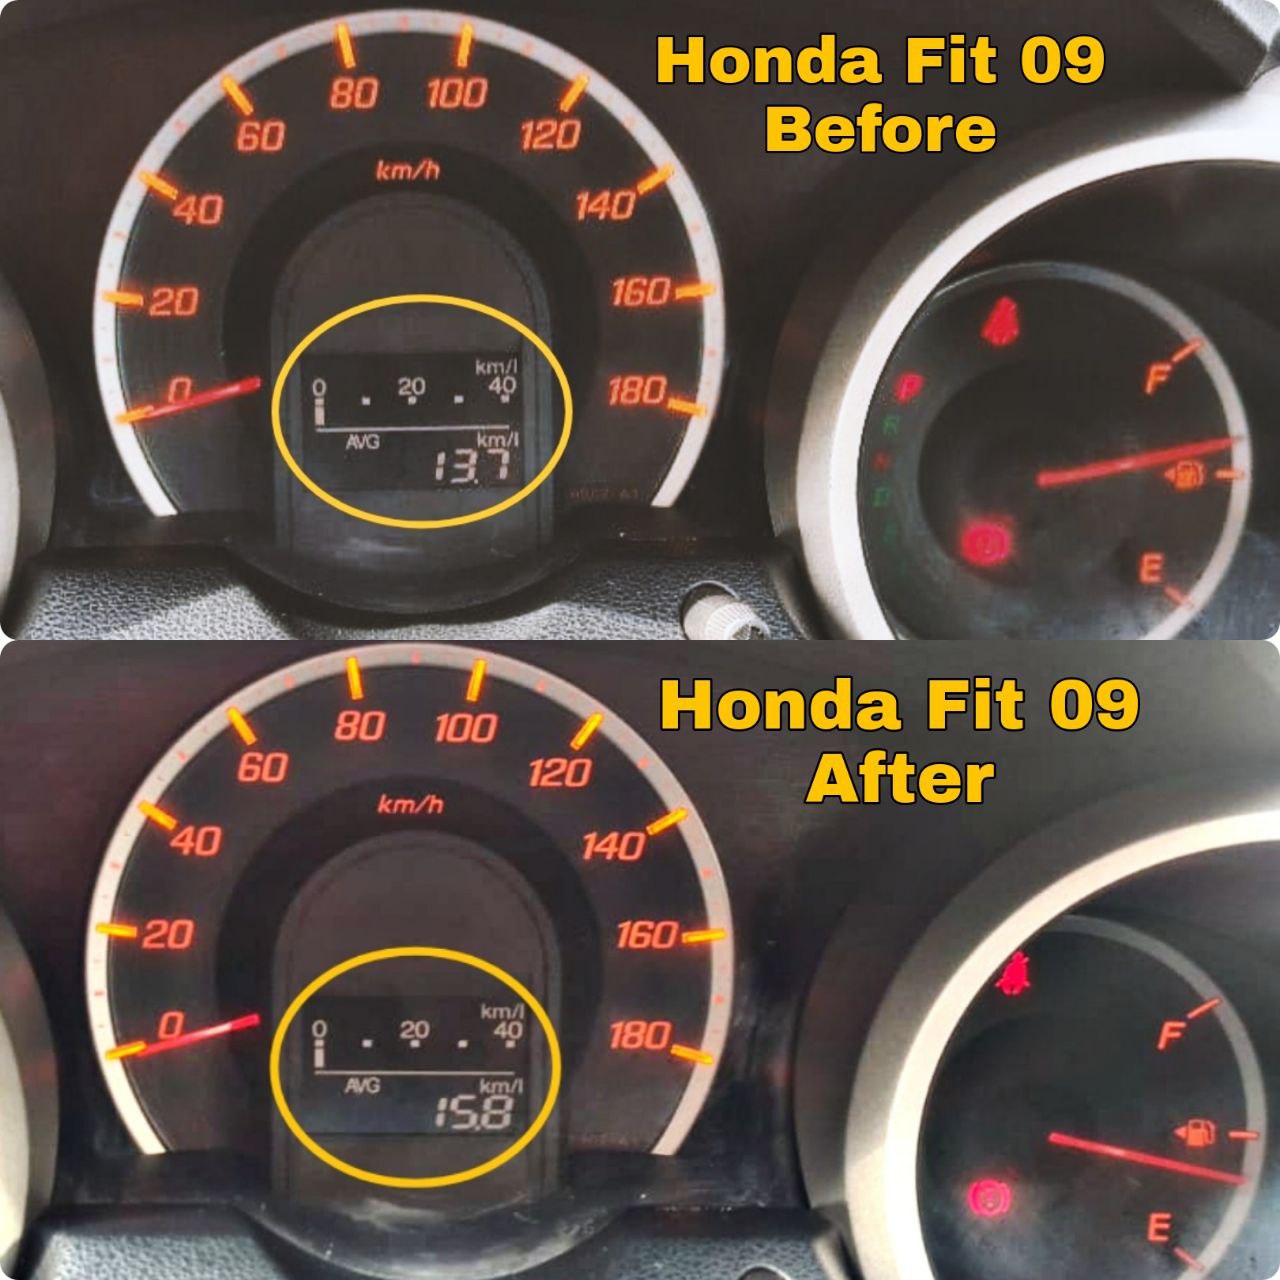 Honda Fit Fuel Savings